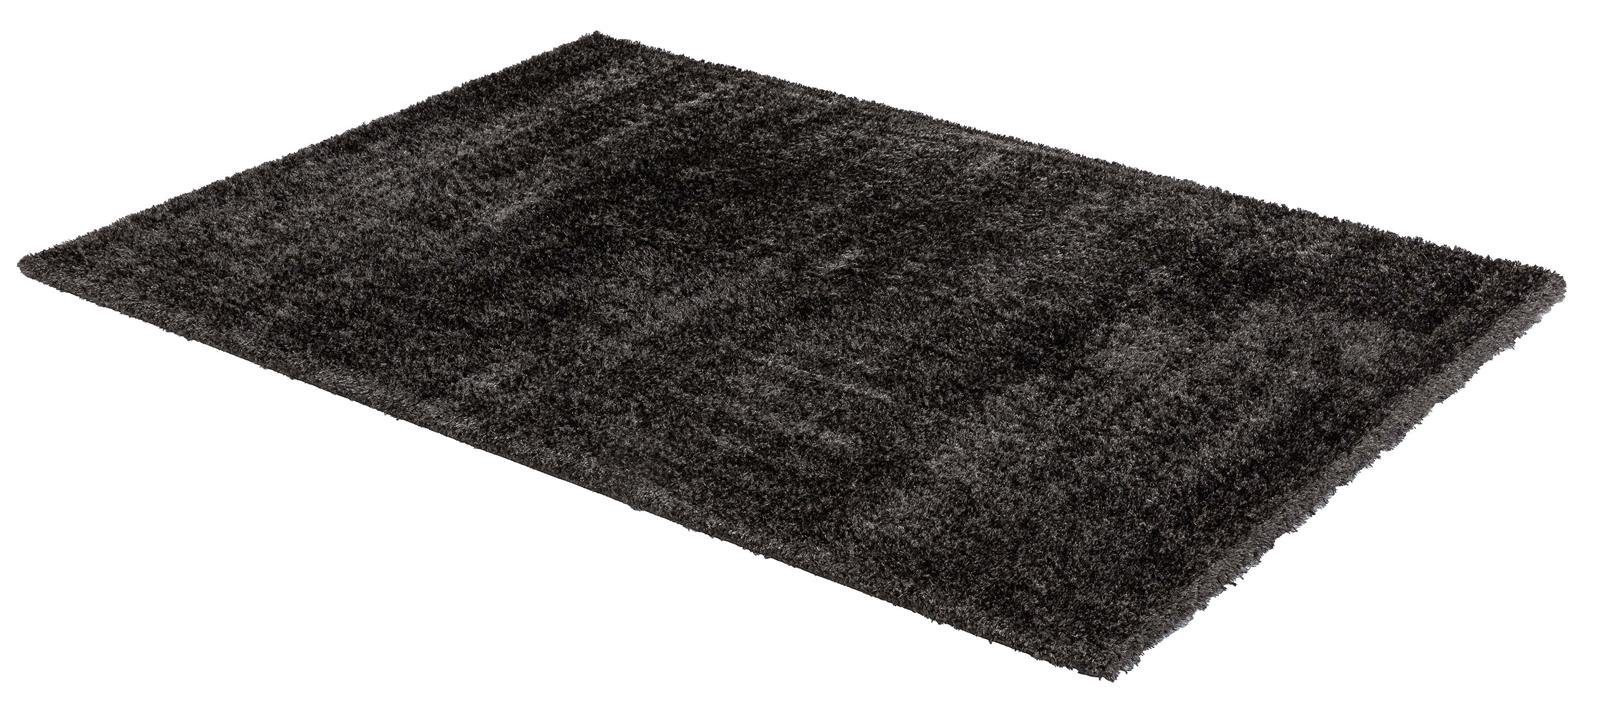 Teppich Teppich Matera 80X150cm D.180 C.040 anthrazit, möbelando,  rechteckig, rechteckig - Breite x Höhe ca. 80 cm x 4,2 cm Maschinell gewebt  Indoor - anthrazit